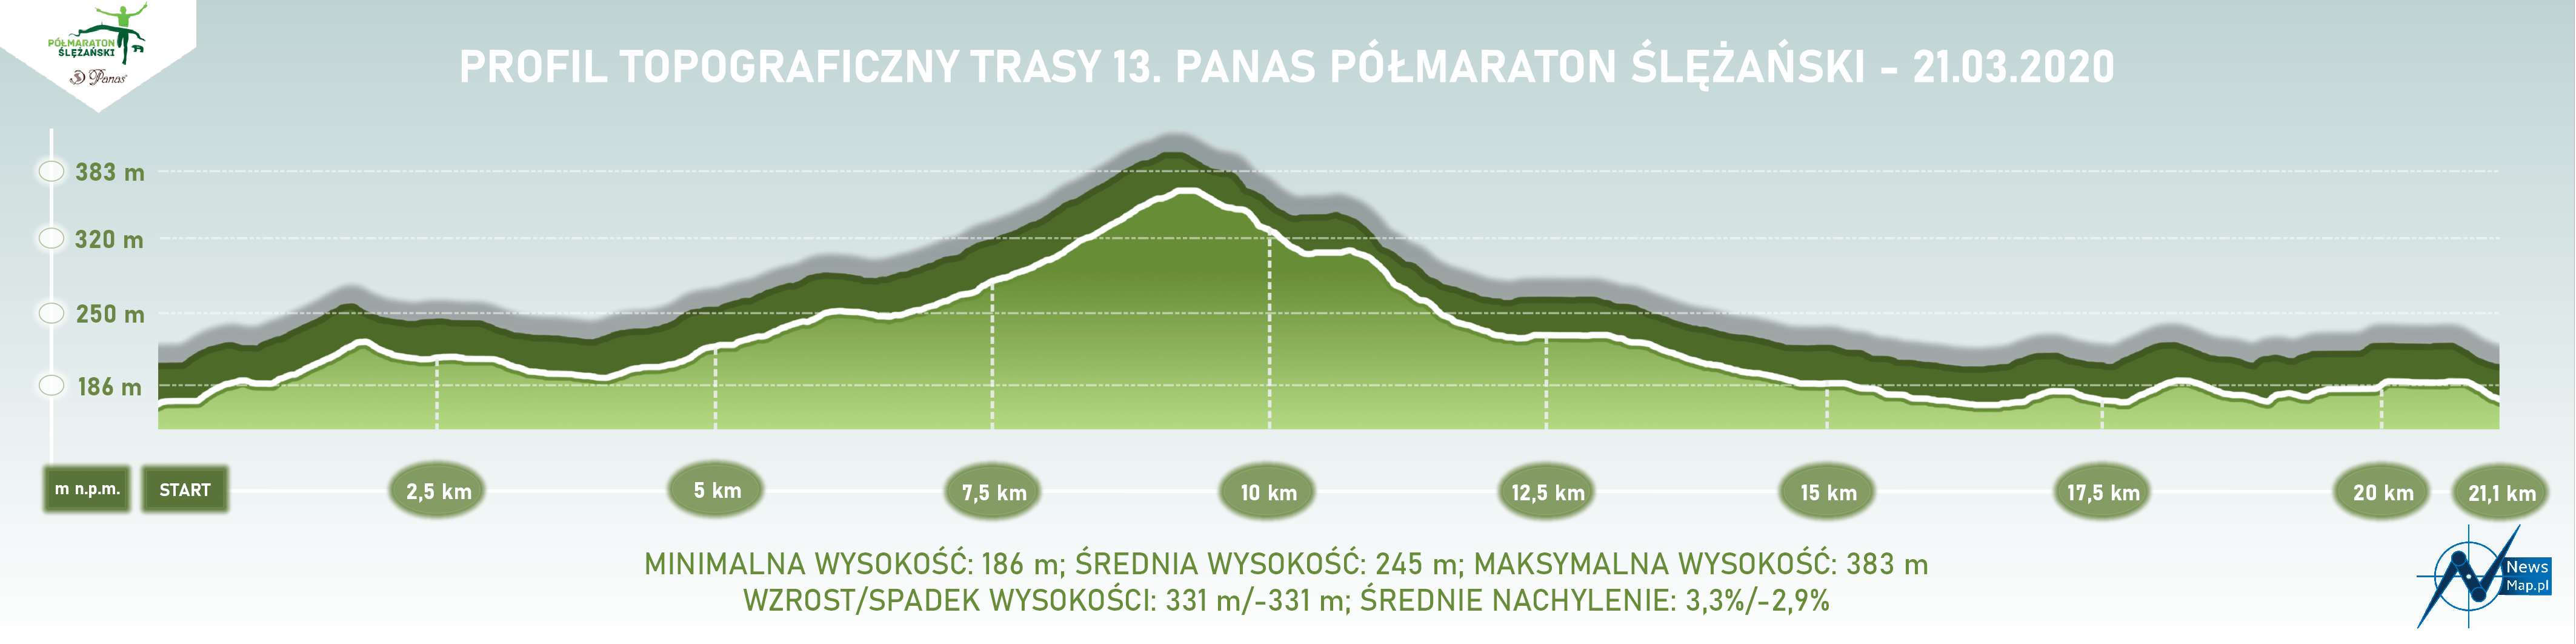 Półmaraton Ślężański - profil topograficzny 2020